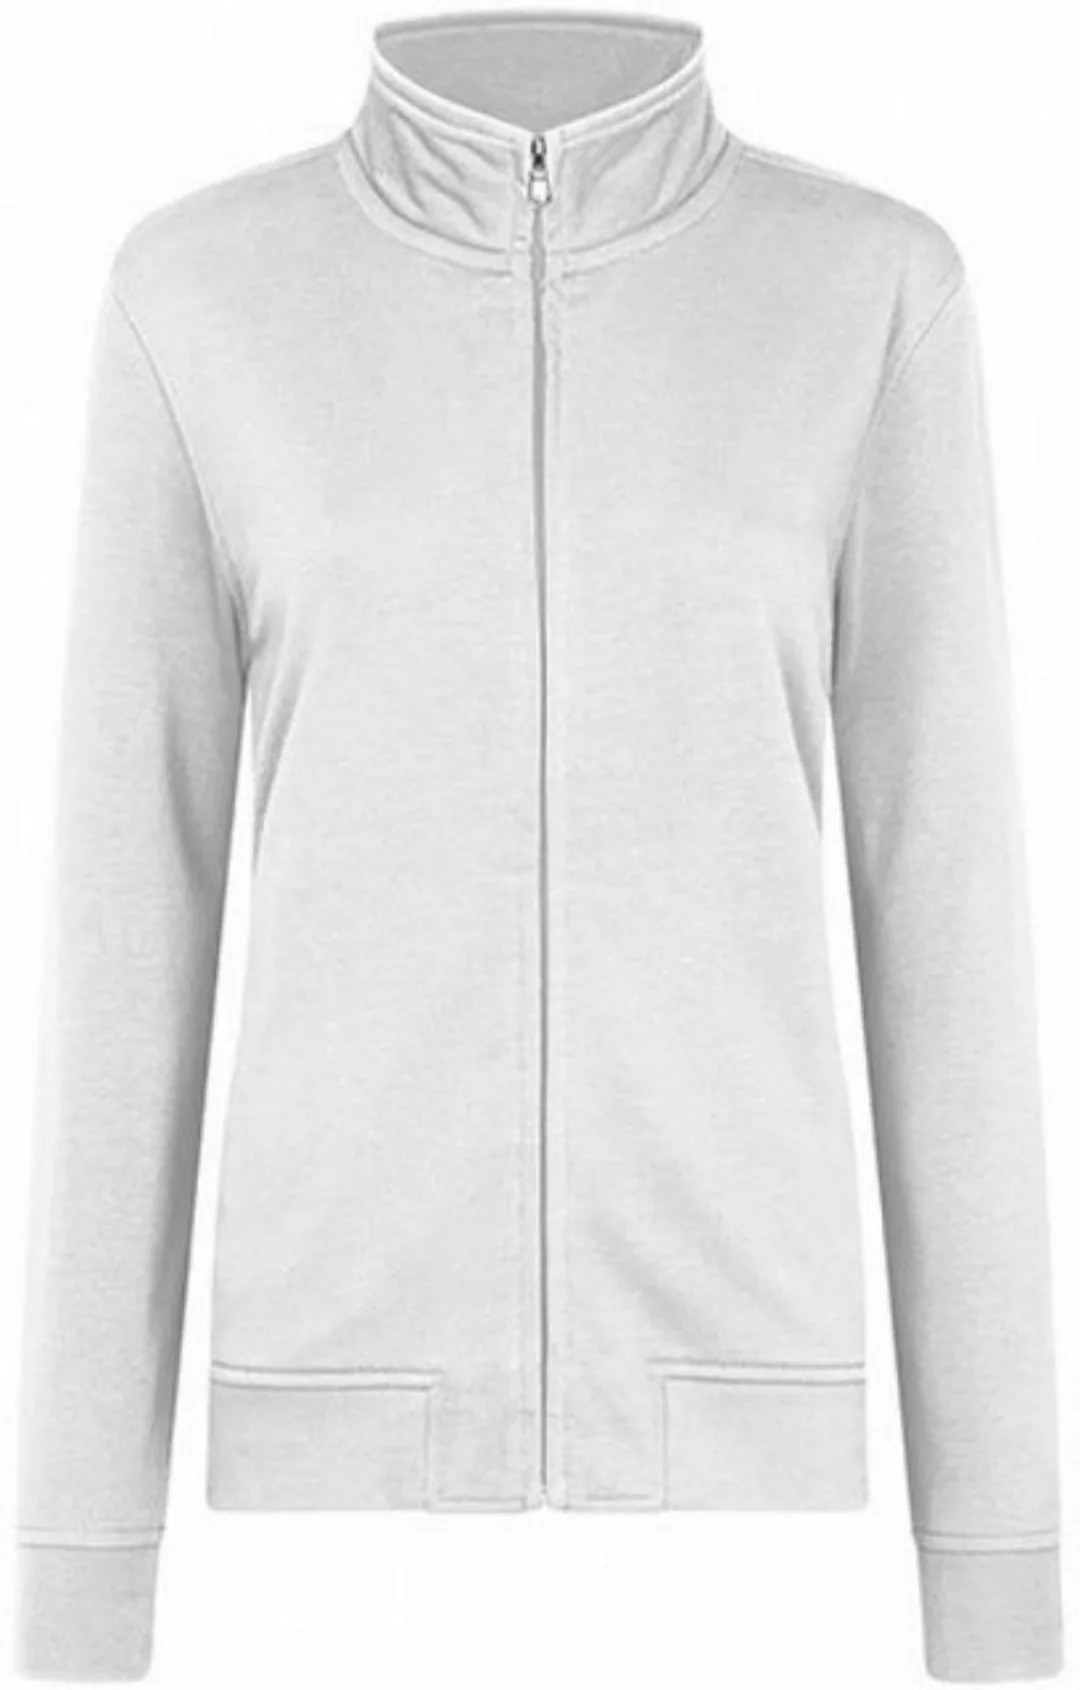 HRM Sweatjacke Women´s Premium Full-Zip Sweat Jacket günstig online kaufen